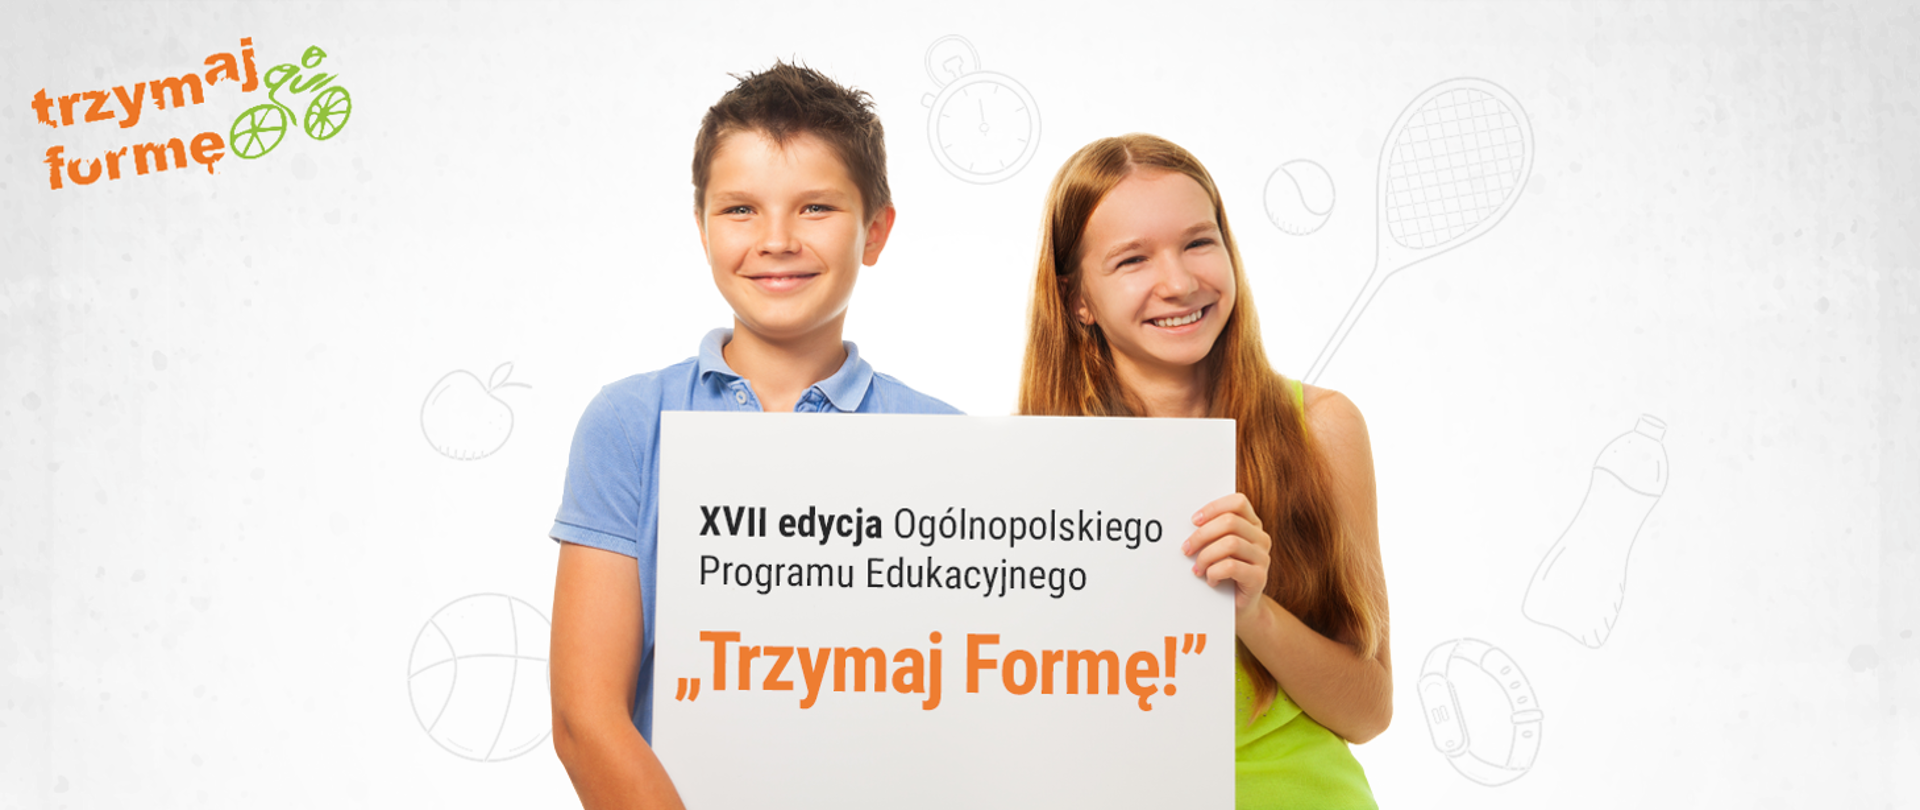 na zdjęciu chłopiec i dziewczynka trzymają planszę z napisem XVII edycja Ogólnopolskiego Programu Edukacyjnego "trzymaj Formę!" w w lewym górnym rogu logo trzymaj formę